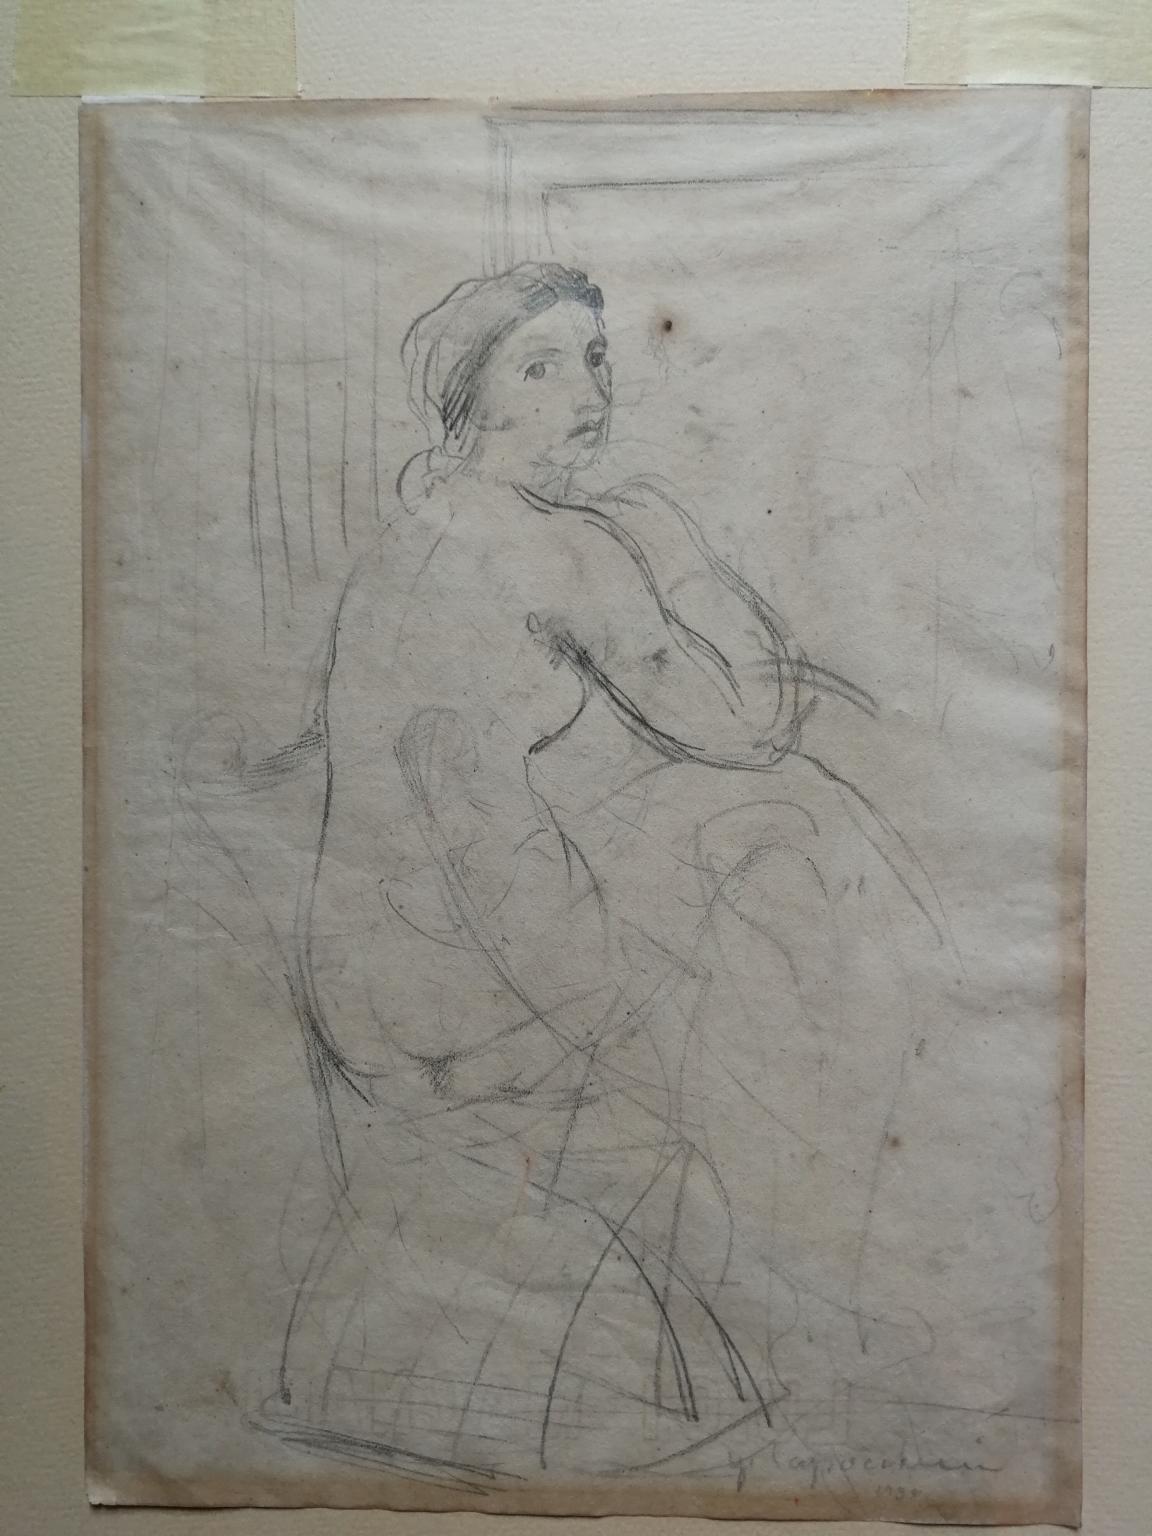 Disegno front retro figurativo toscano nudo femminile del XX secolo